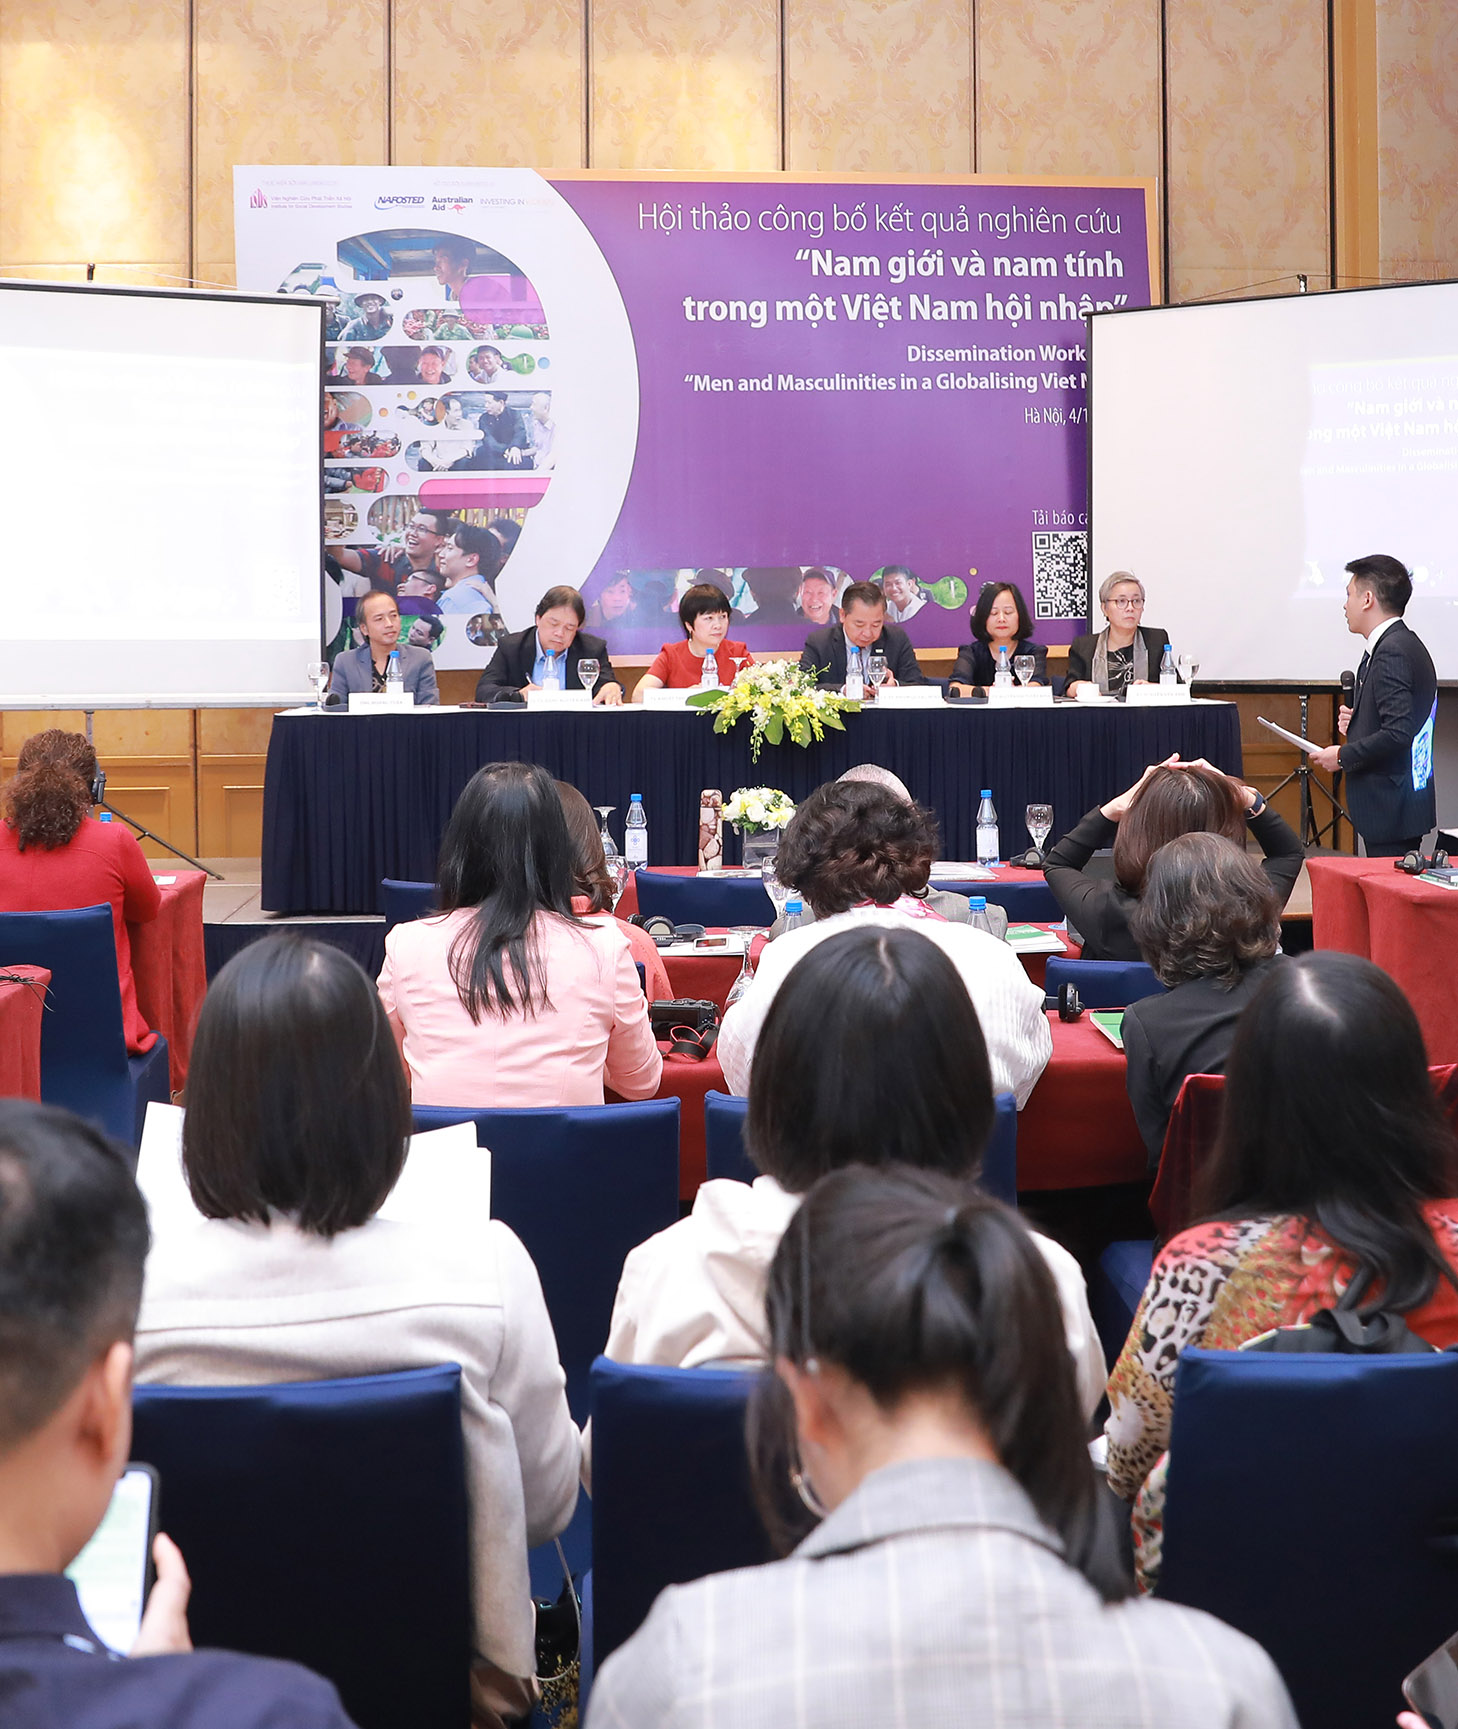 Hội thảo công bố kết quả nghiên cứu “Nam giới và nam tính trong một Việt Nam hội nhập”